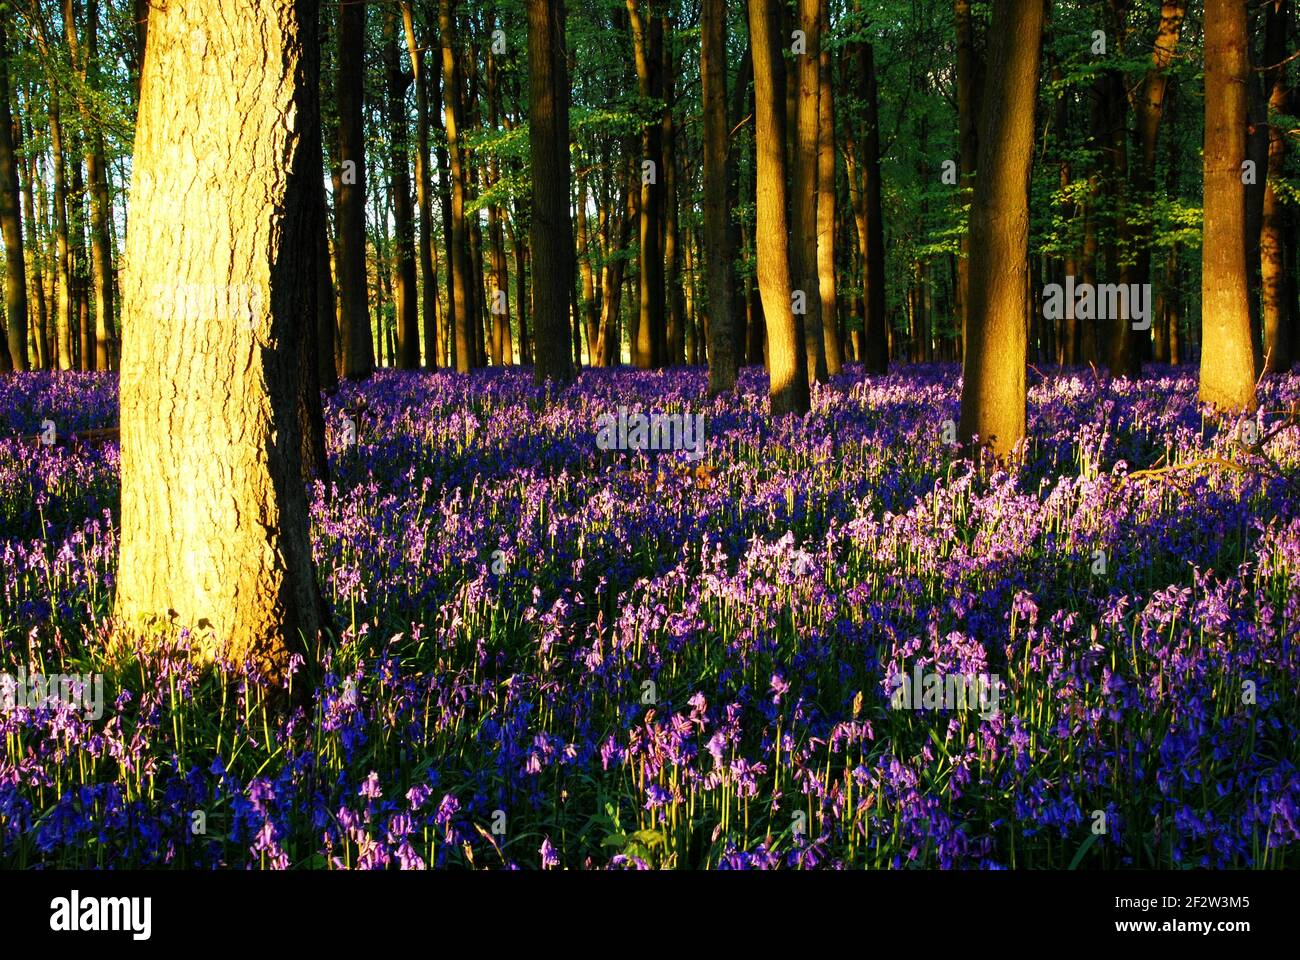 Blubells fleurit lors d'une belle journée de printemps à Dockey Wood, Ashridge. Propriété de la National Trust, Dockey Wood est une petite mais belle parcelle d'Engli sauvage Banque D'Images